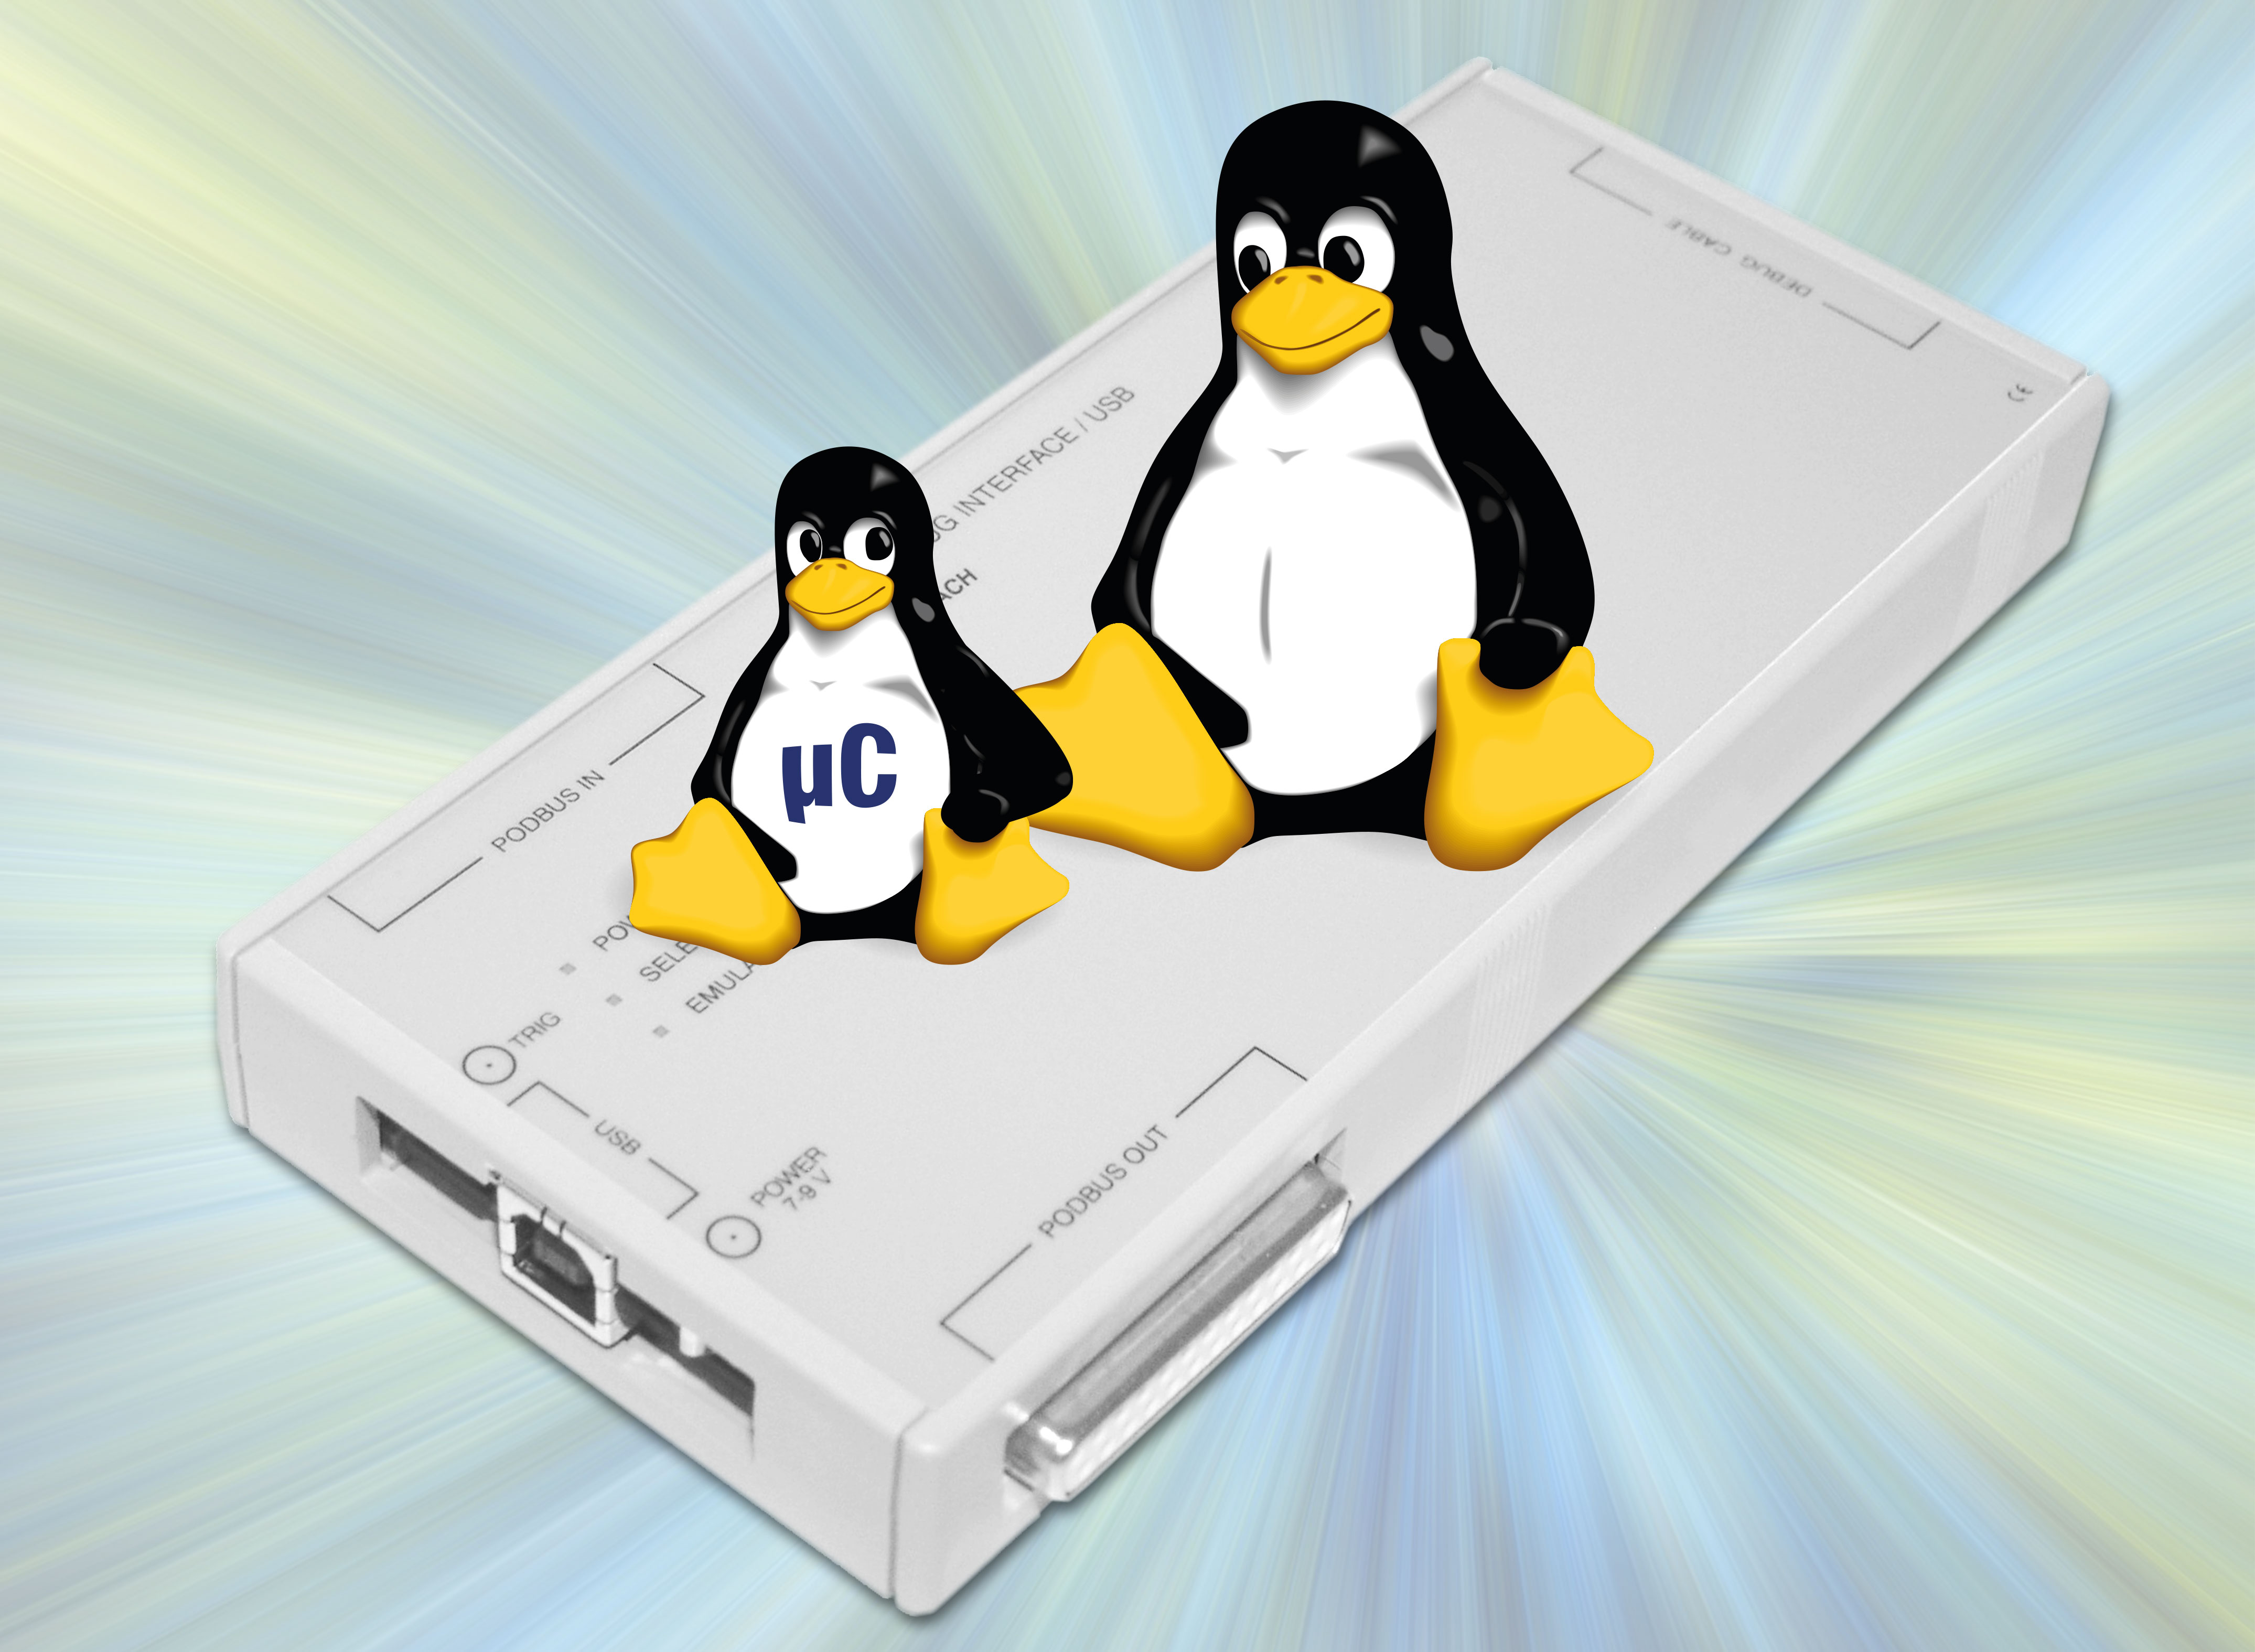 Linux-aware debugging - 2000